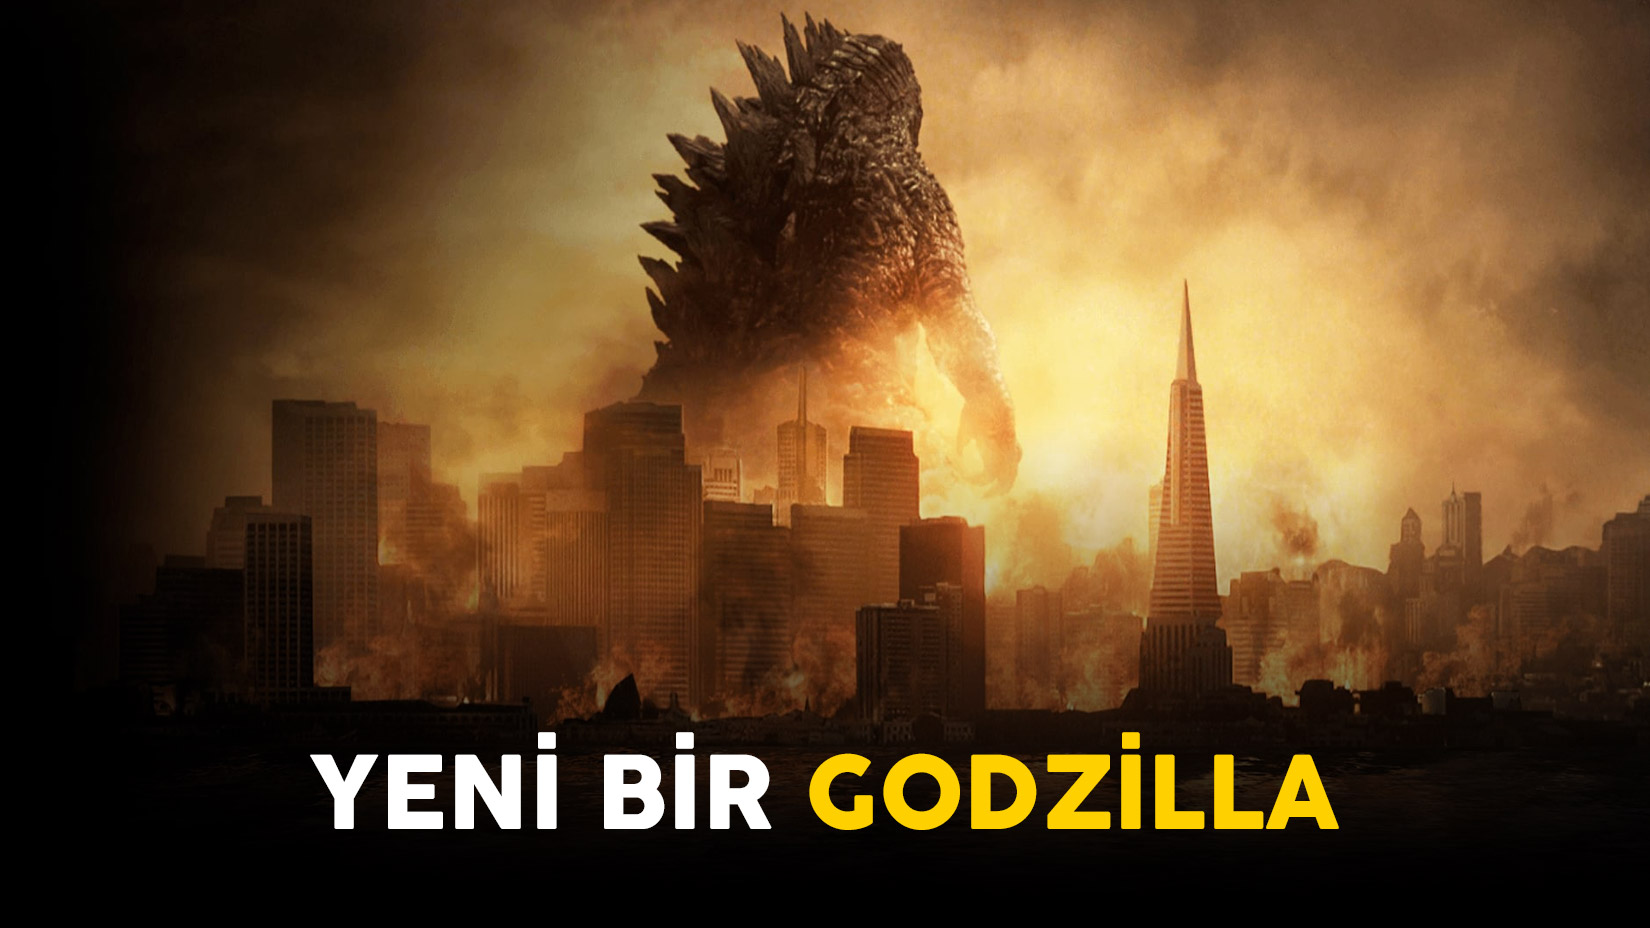 Yeni Bir Godzilla Filmi